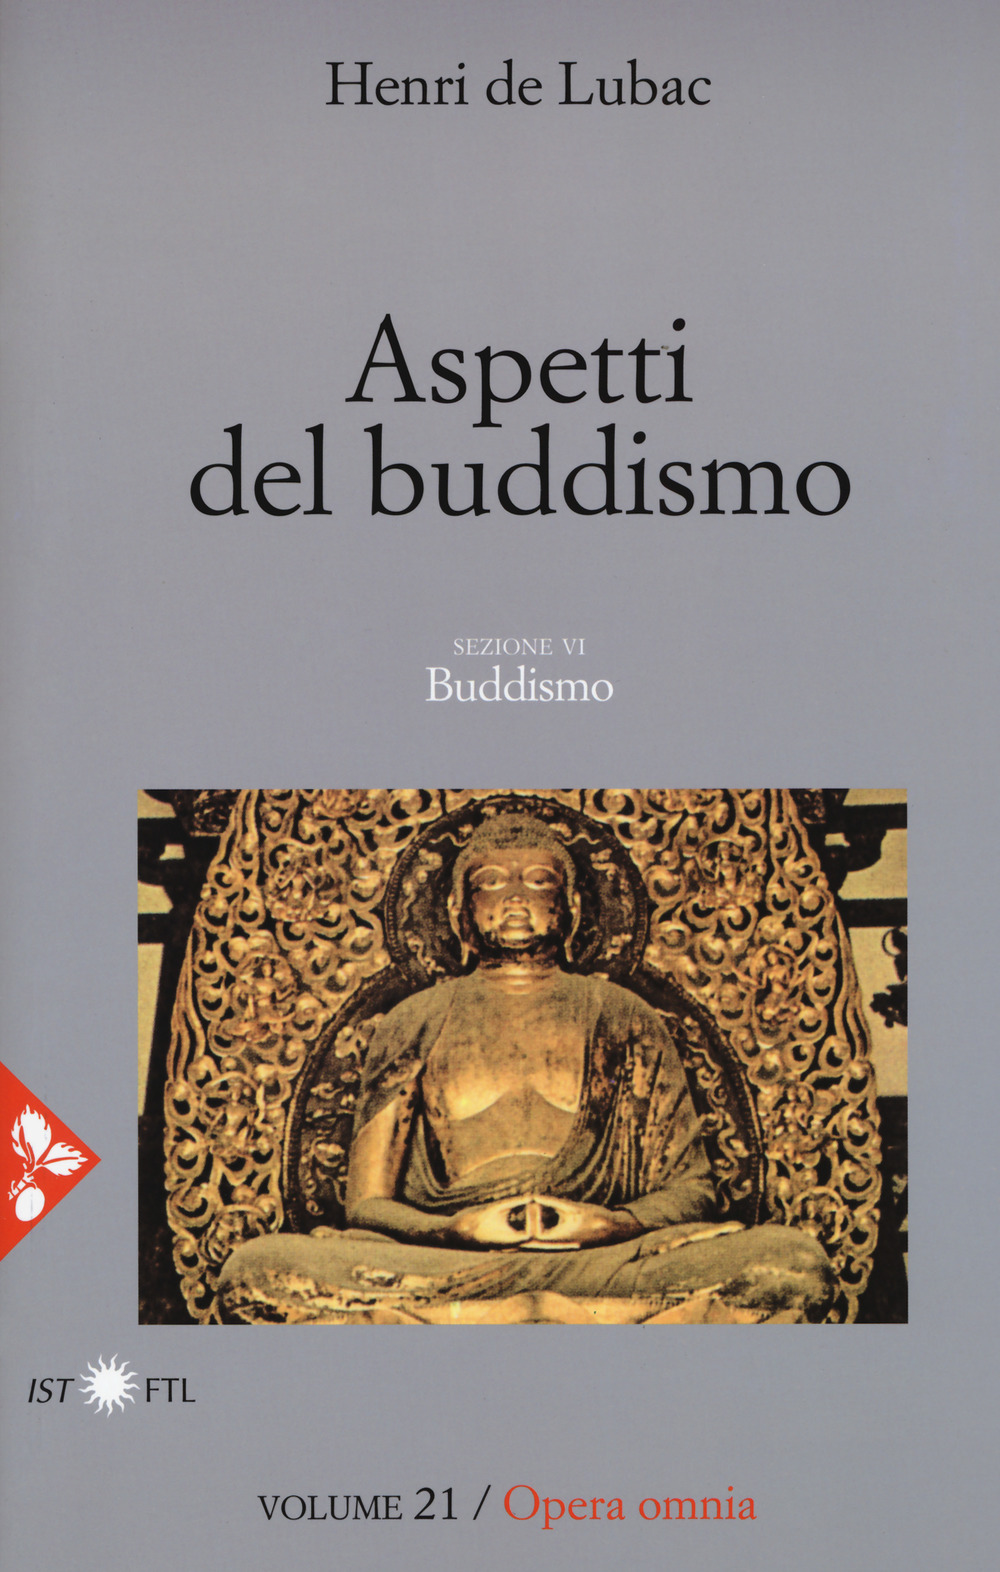 Opera omnia. Vol. 21: Aspetti del buddismo. Buddismo